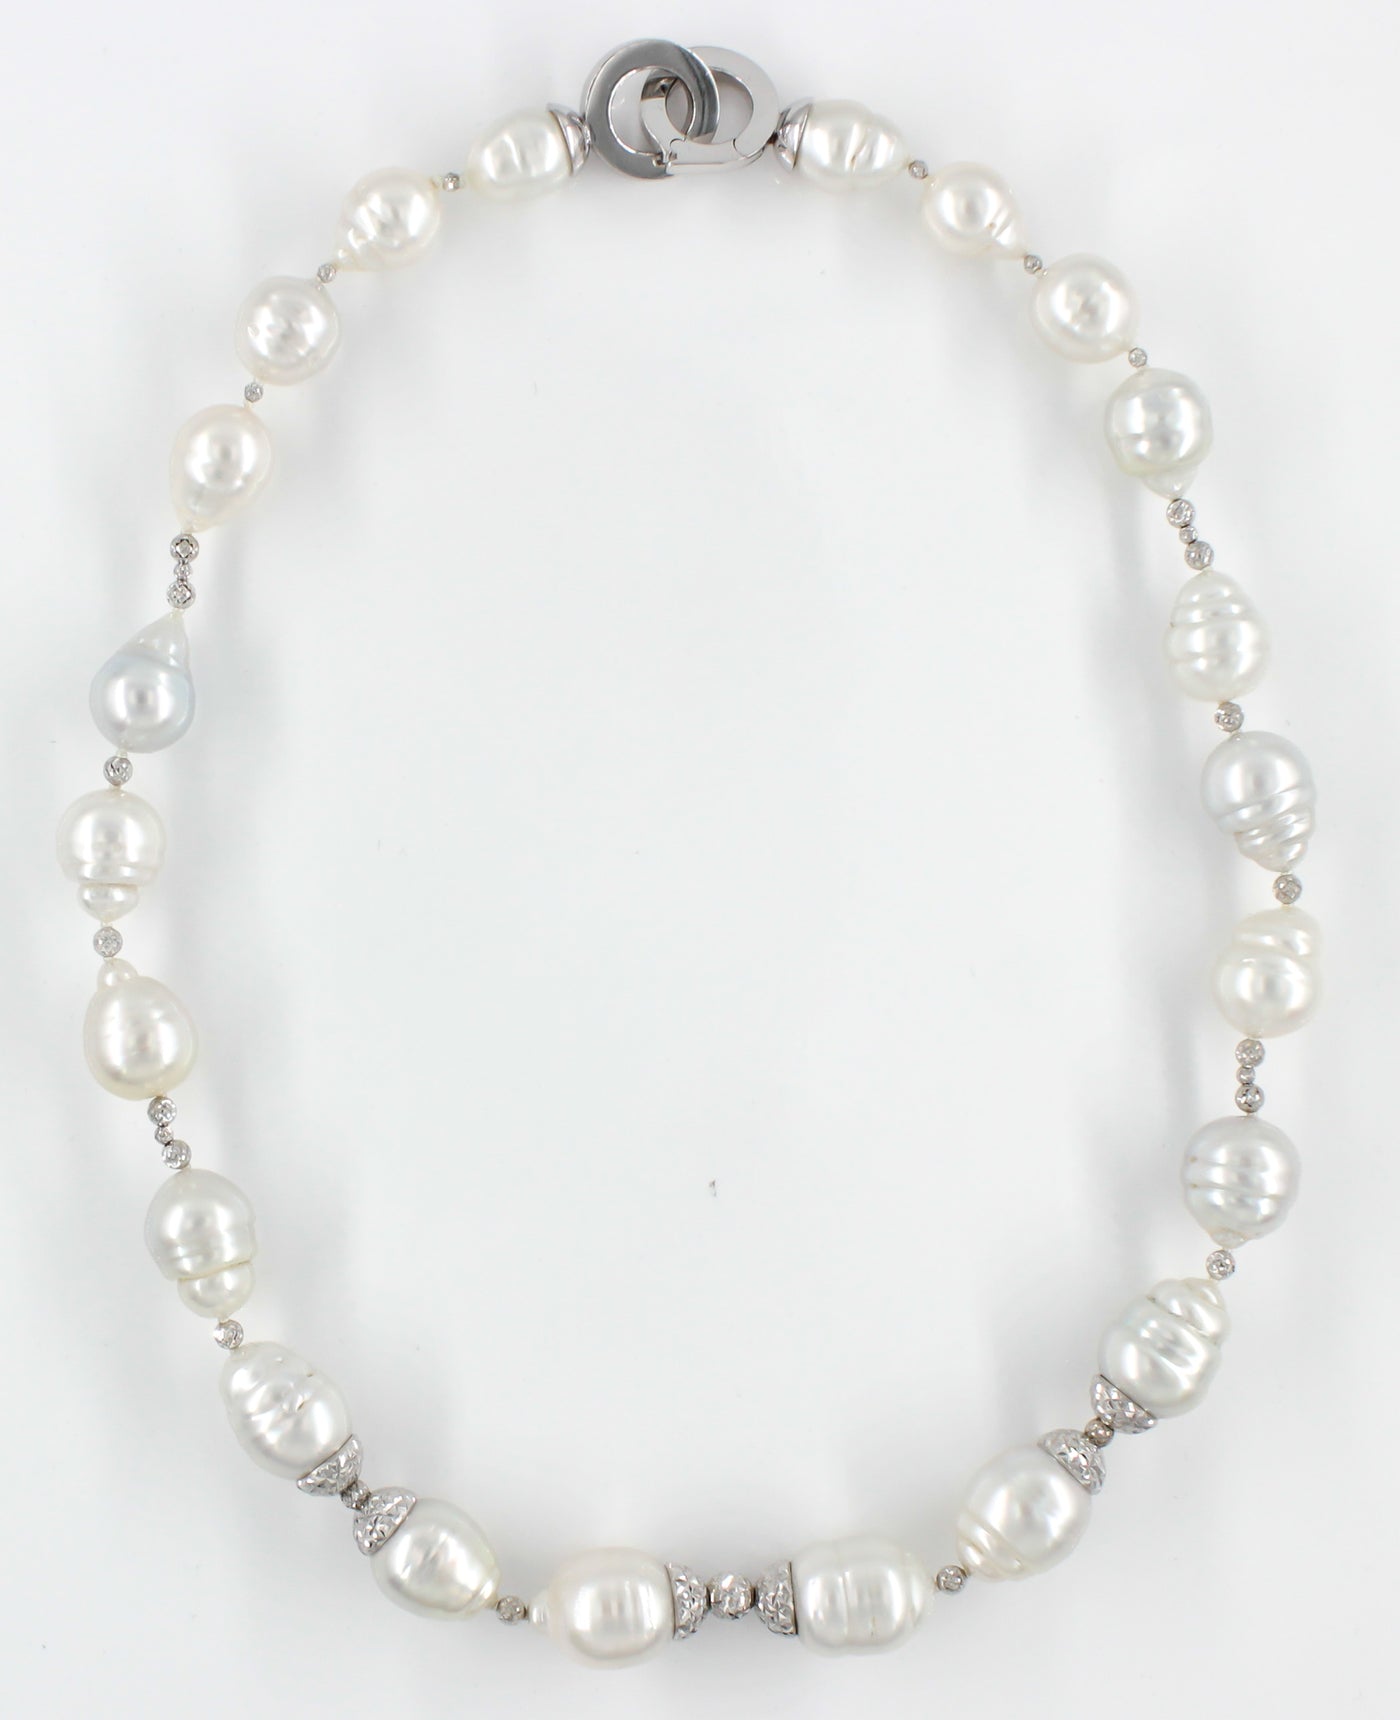 Baroque South Sea Pearl Necklaces